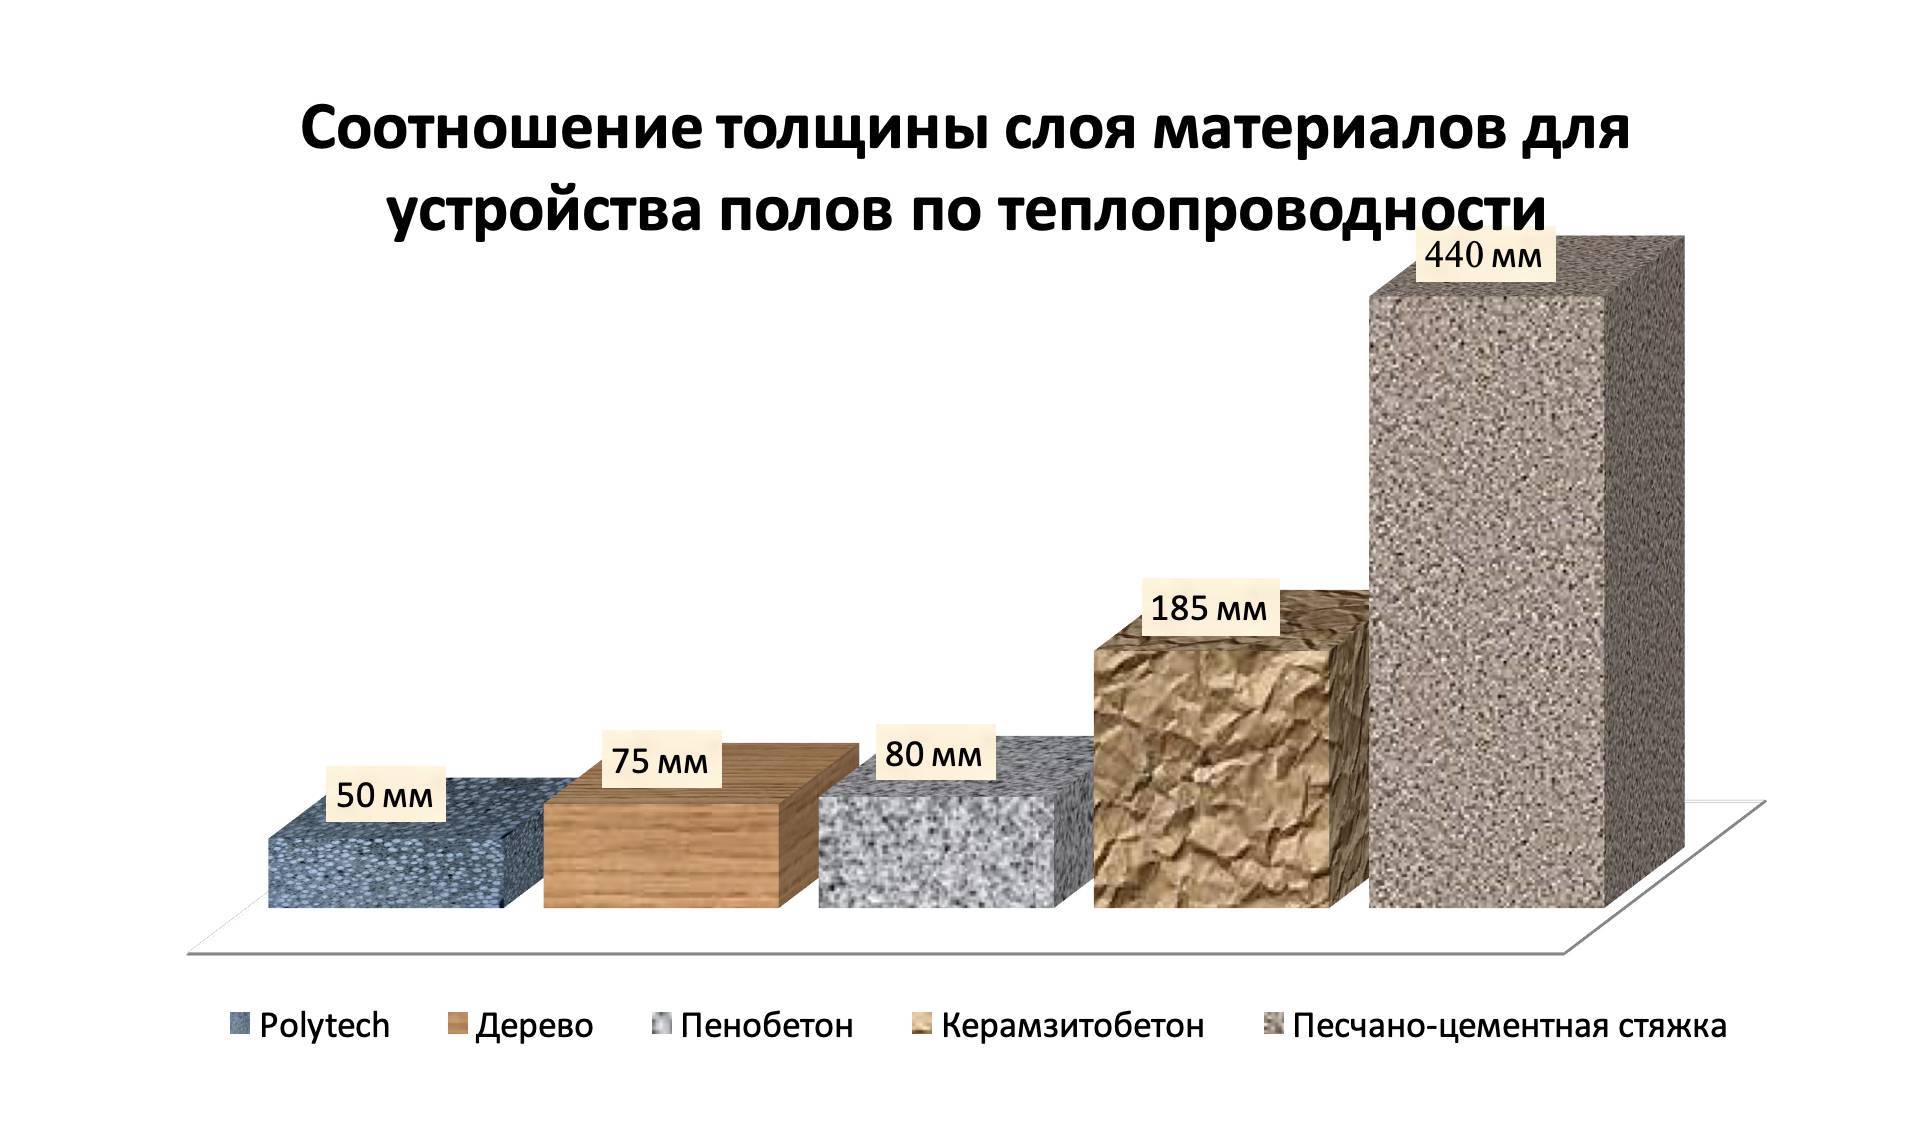 Марки керамзитобетона: какие бывают, состав смеси, удельный вес и плотность кг м3